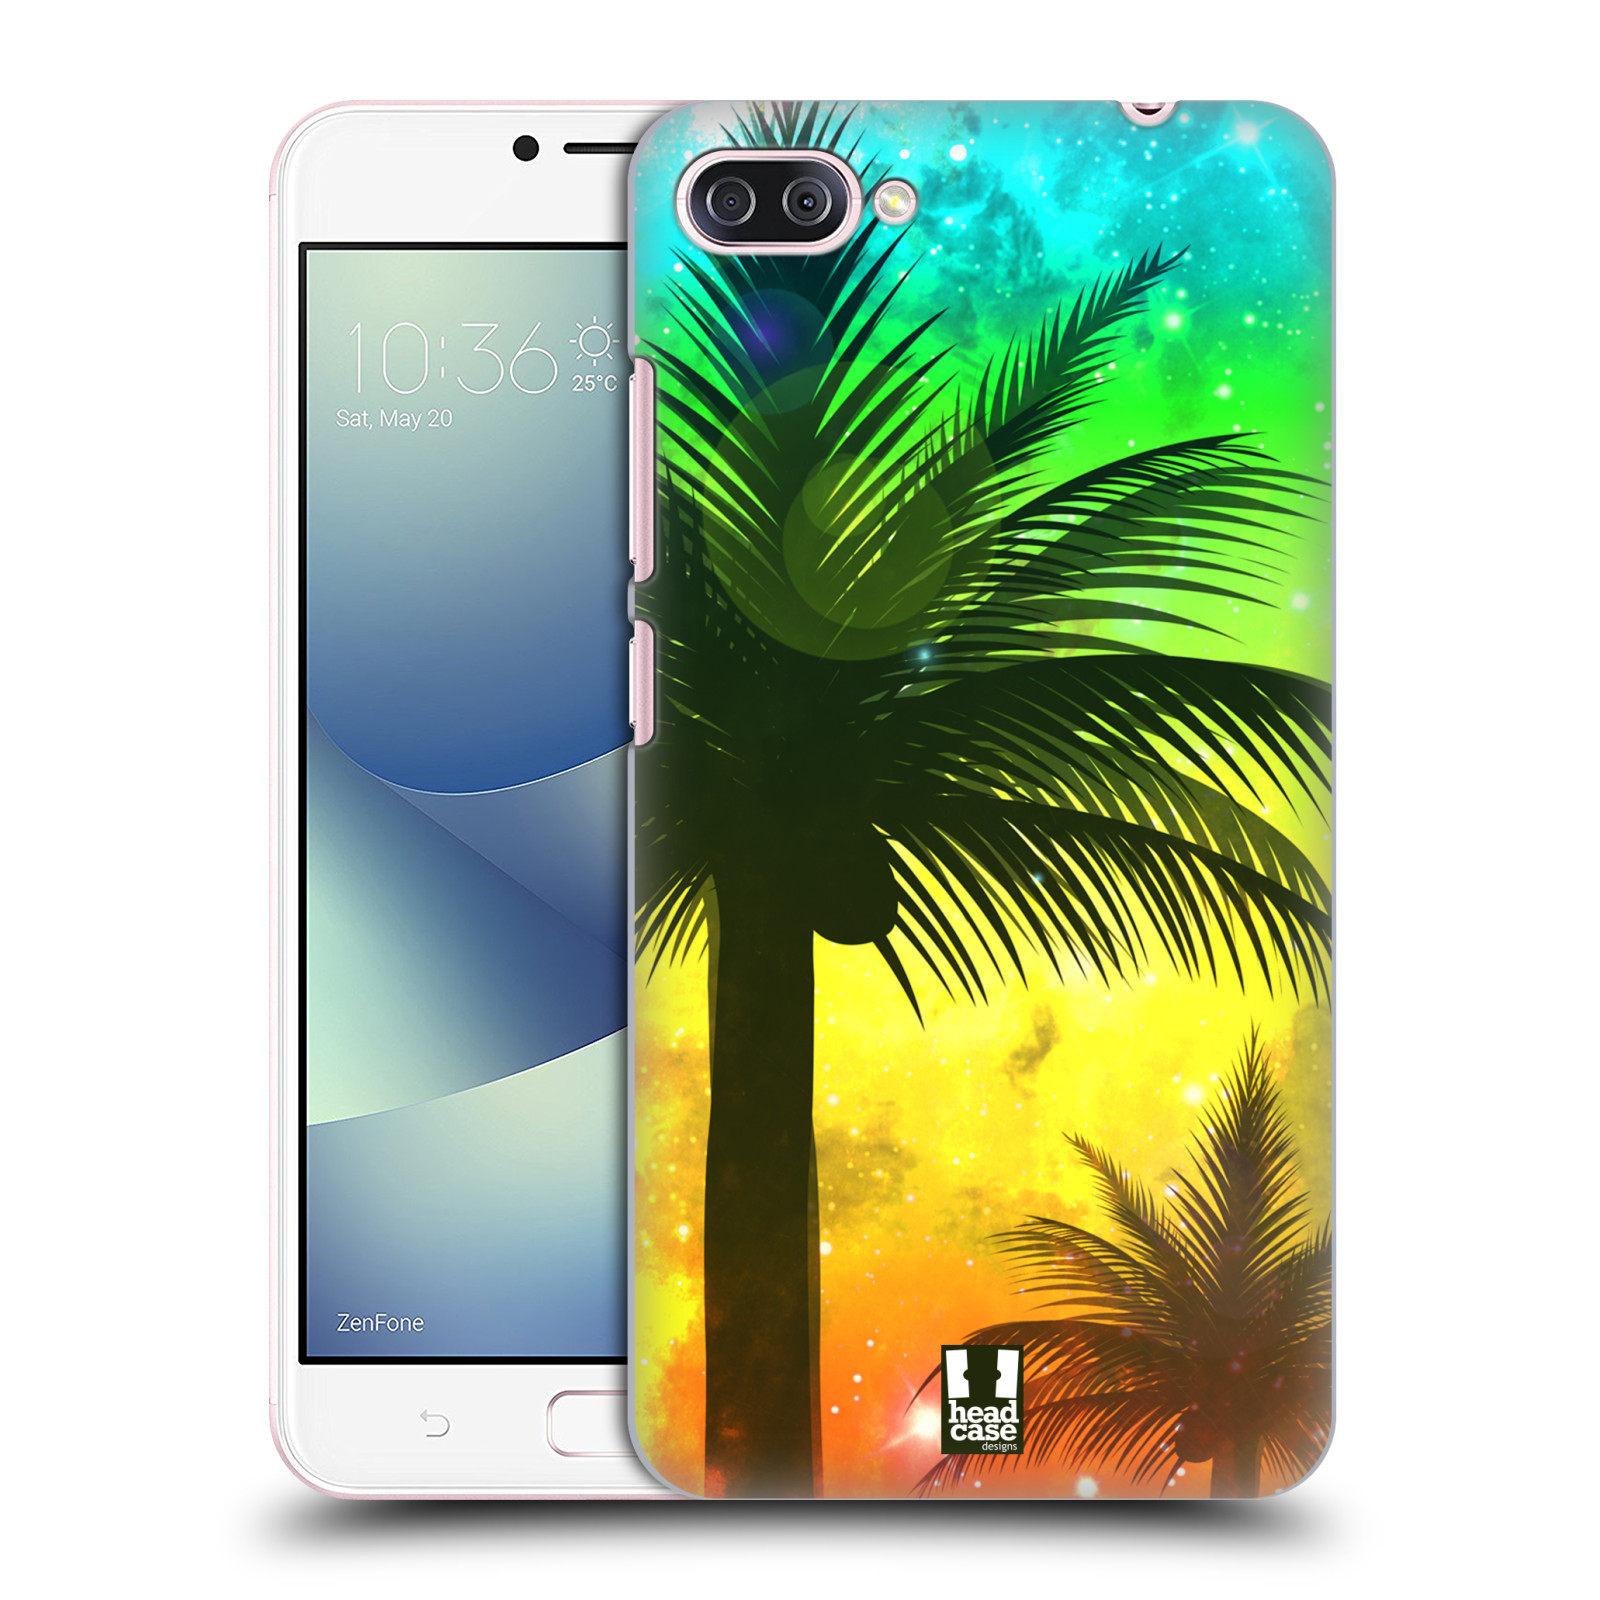 HEAD CASE plastový obal na mobil Asus Zenfone 4 MAX ZC554KL vzor Kreslený motiv silueta moře a palmy ZELENÁ A ORANŽOVÁ